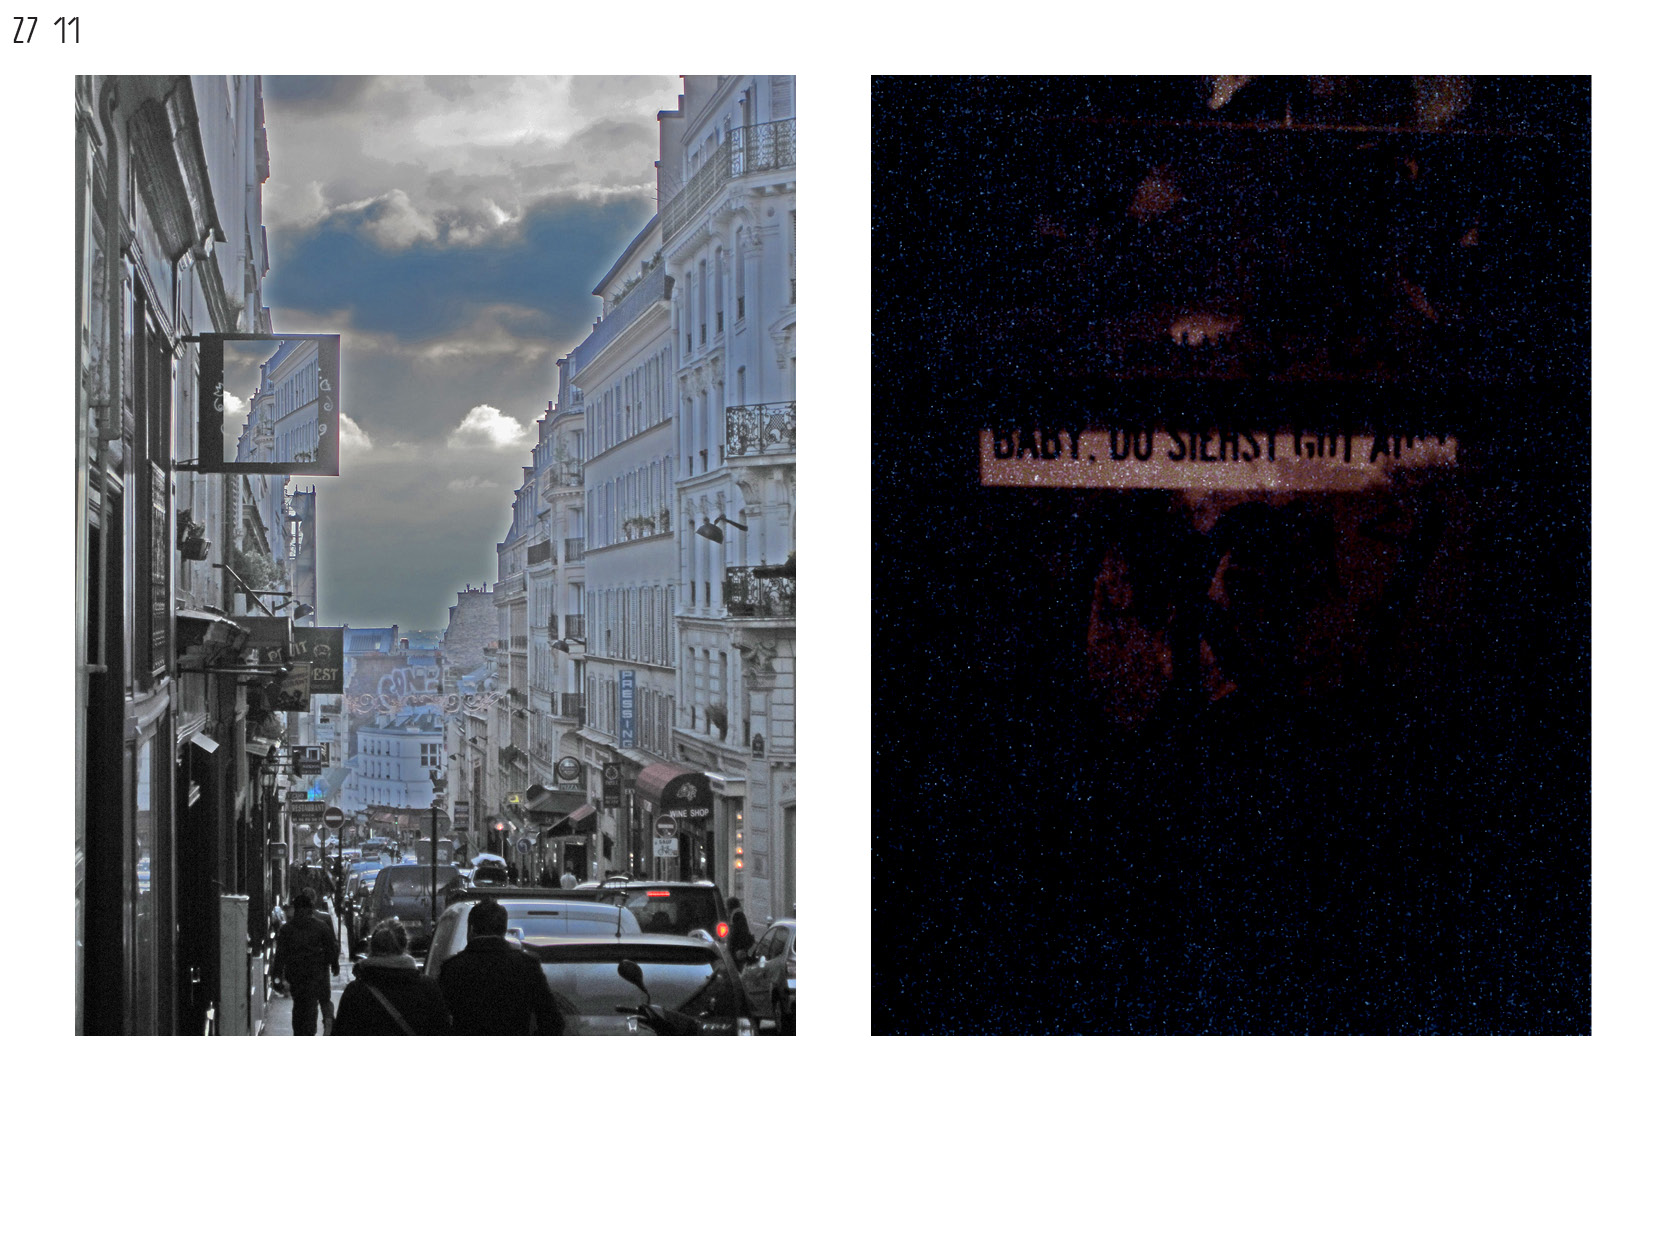 Gerrit-Schweiger-Dialog-Städte-Paris-Berlin-Jessica-Blank-Experiment-Fotoserie-Tagebuch-visuelle-Kommunikation-42